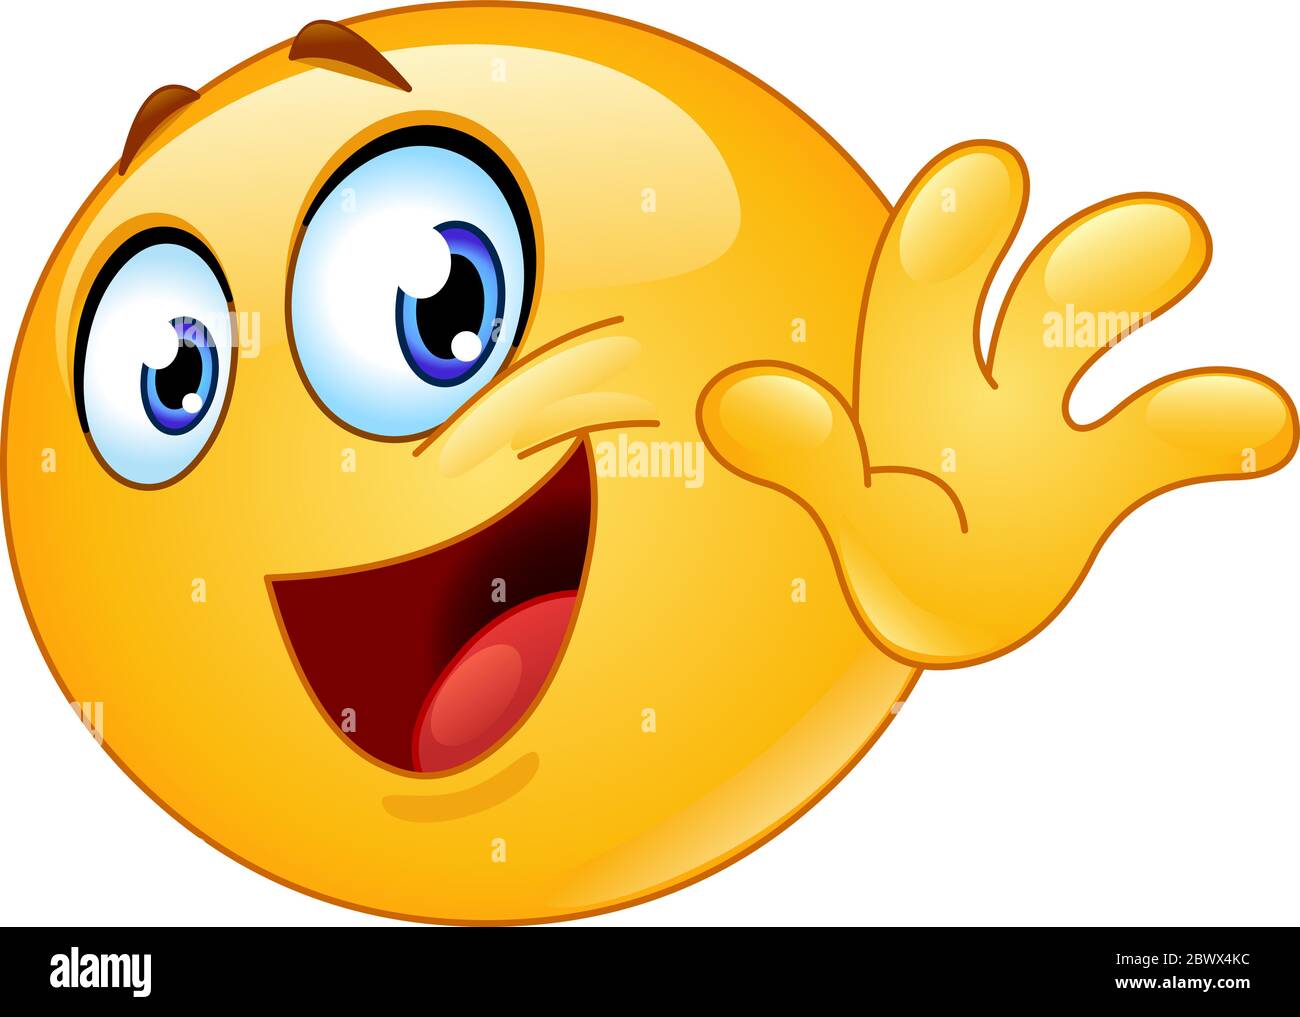 Ciao emoji immagini e fotografie stock ad alta risoluzione - Alamy